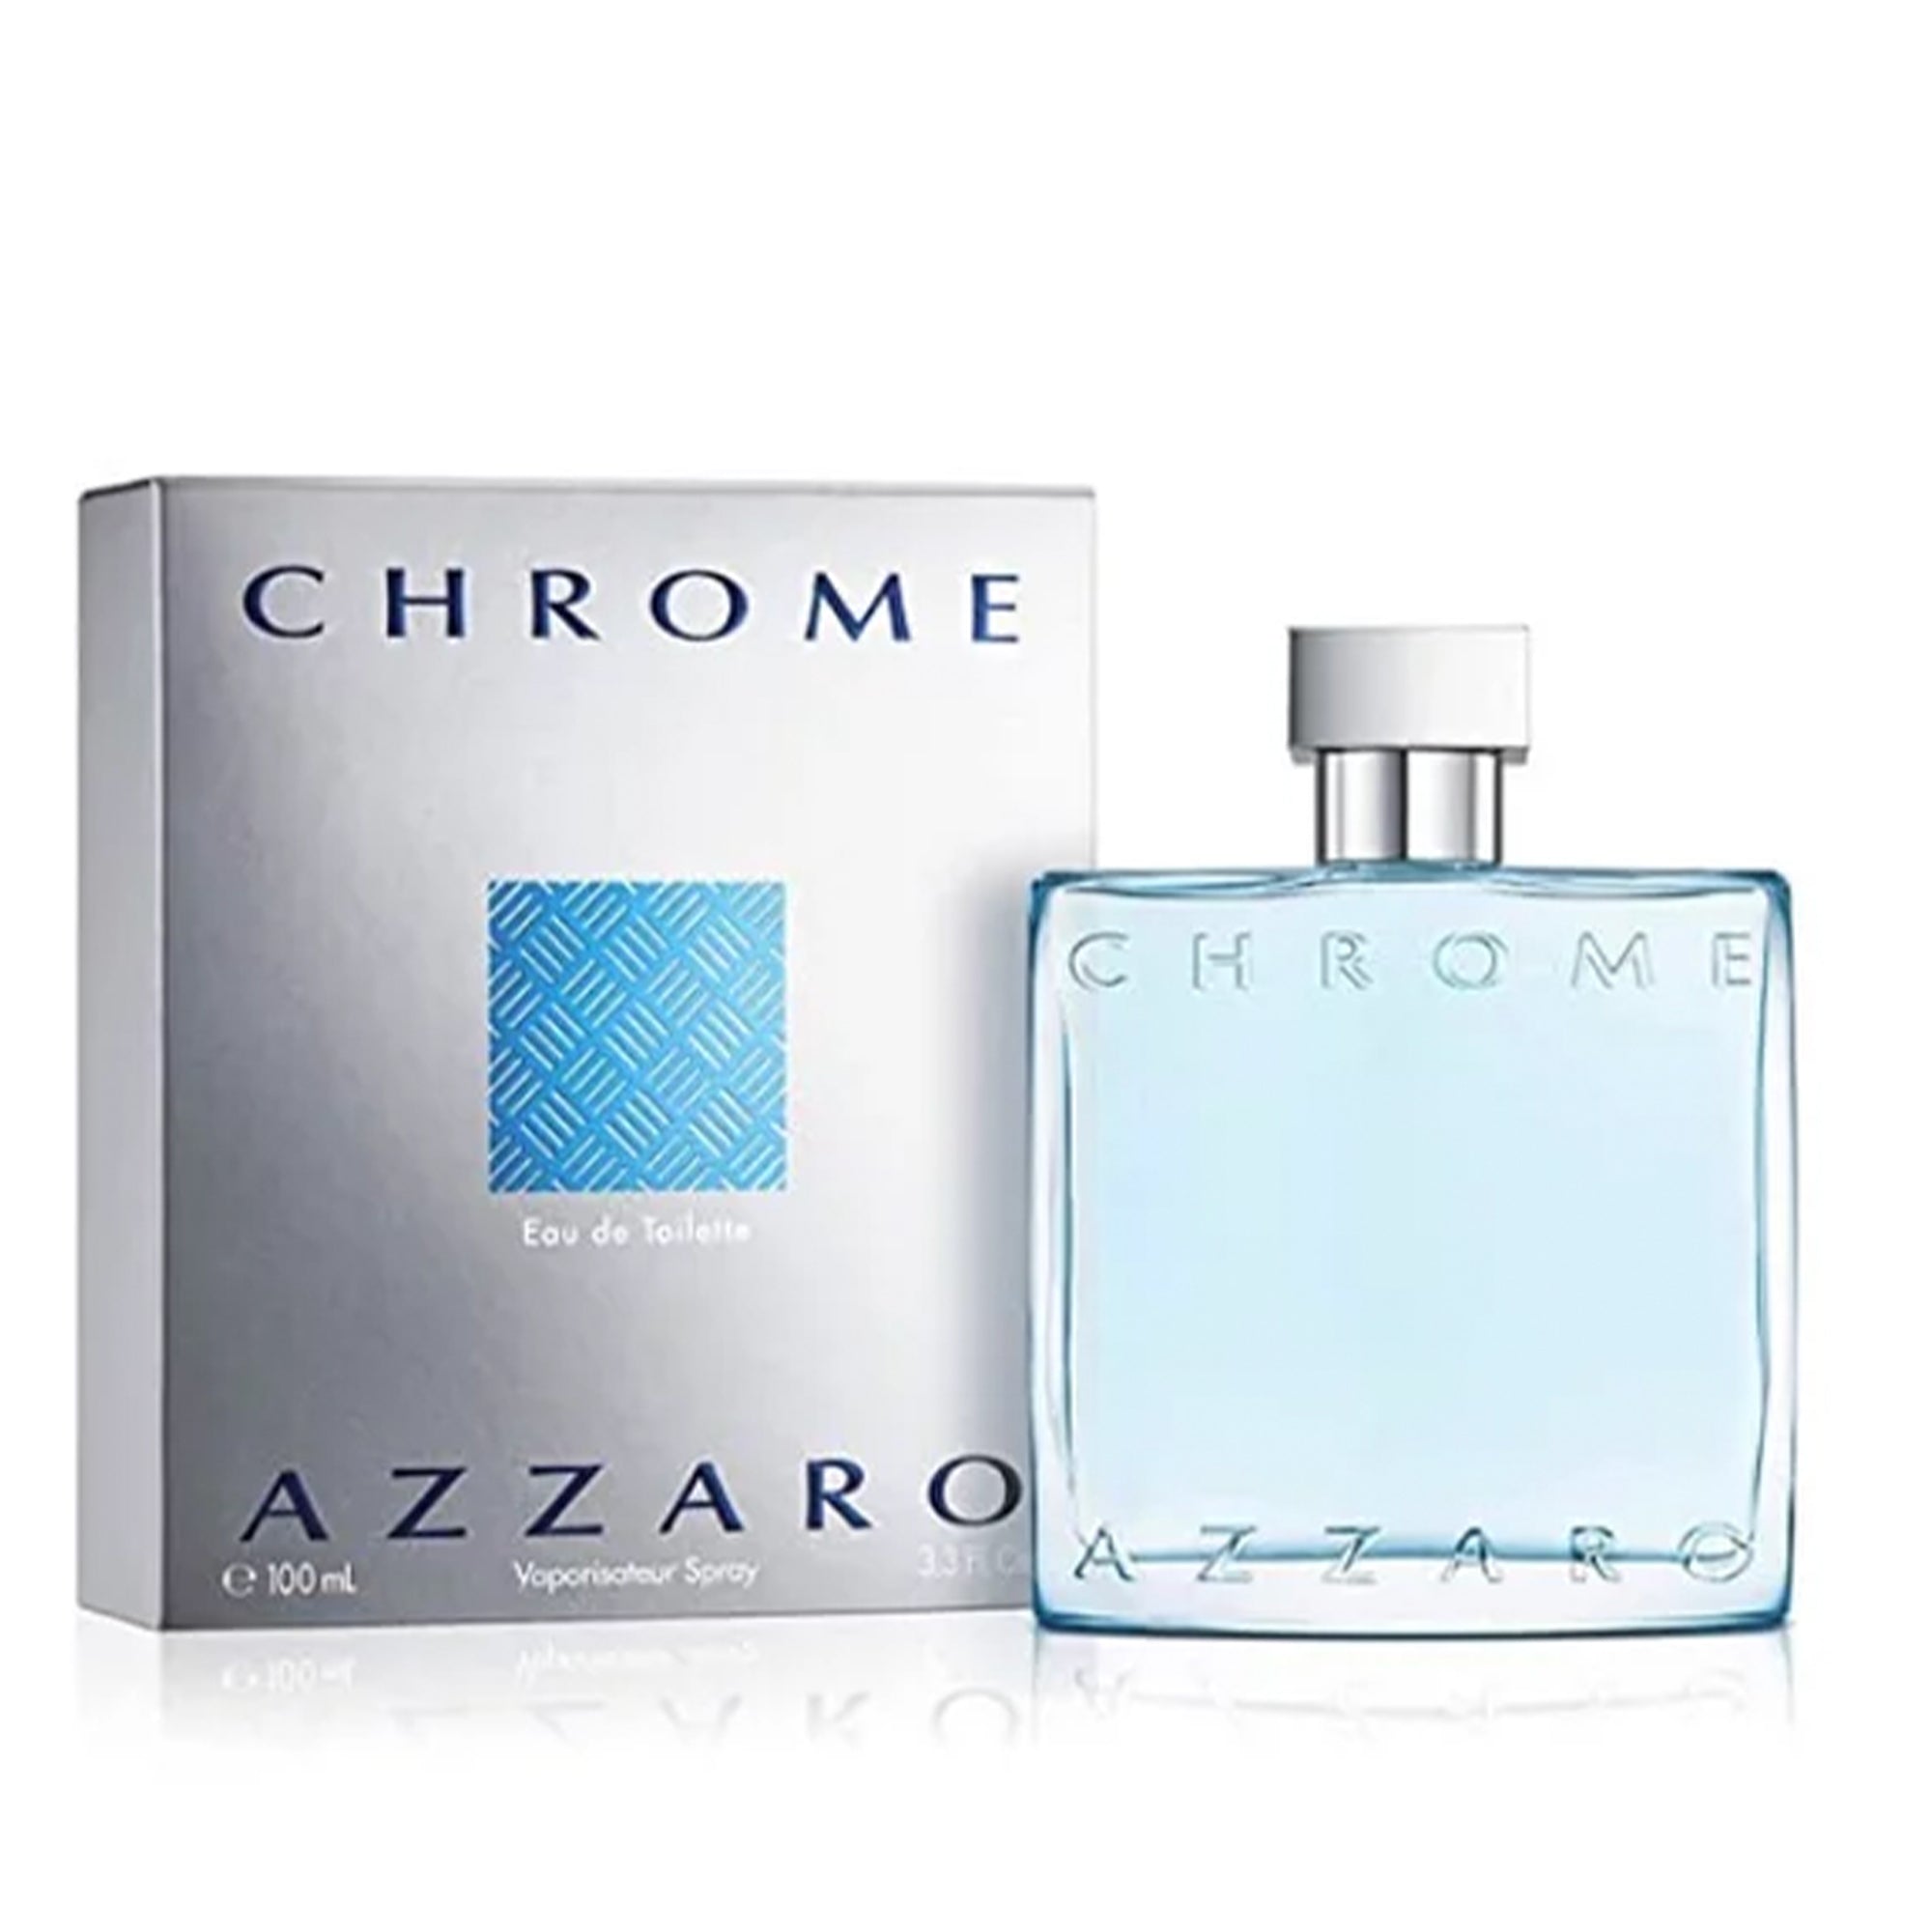 Chrome Azzaro Men's Cologne 3.3 oz